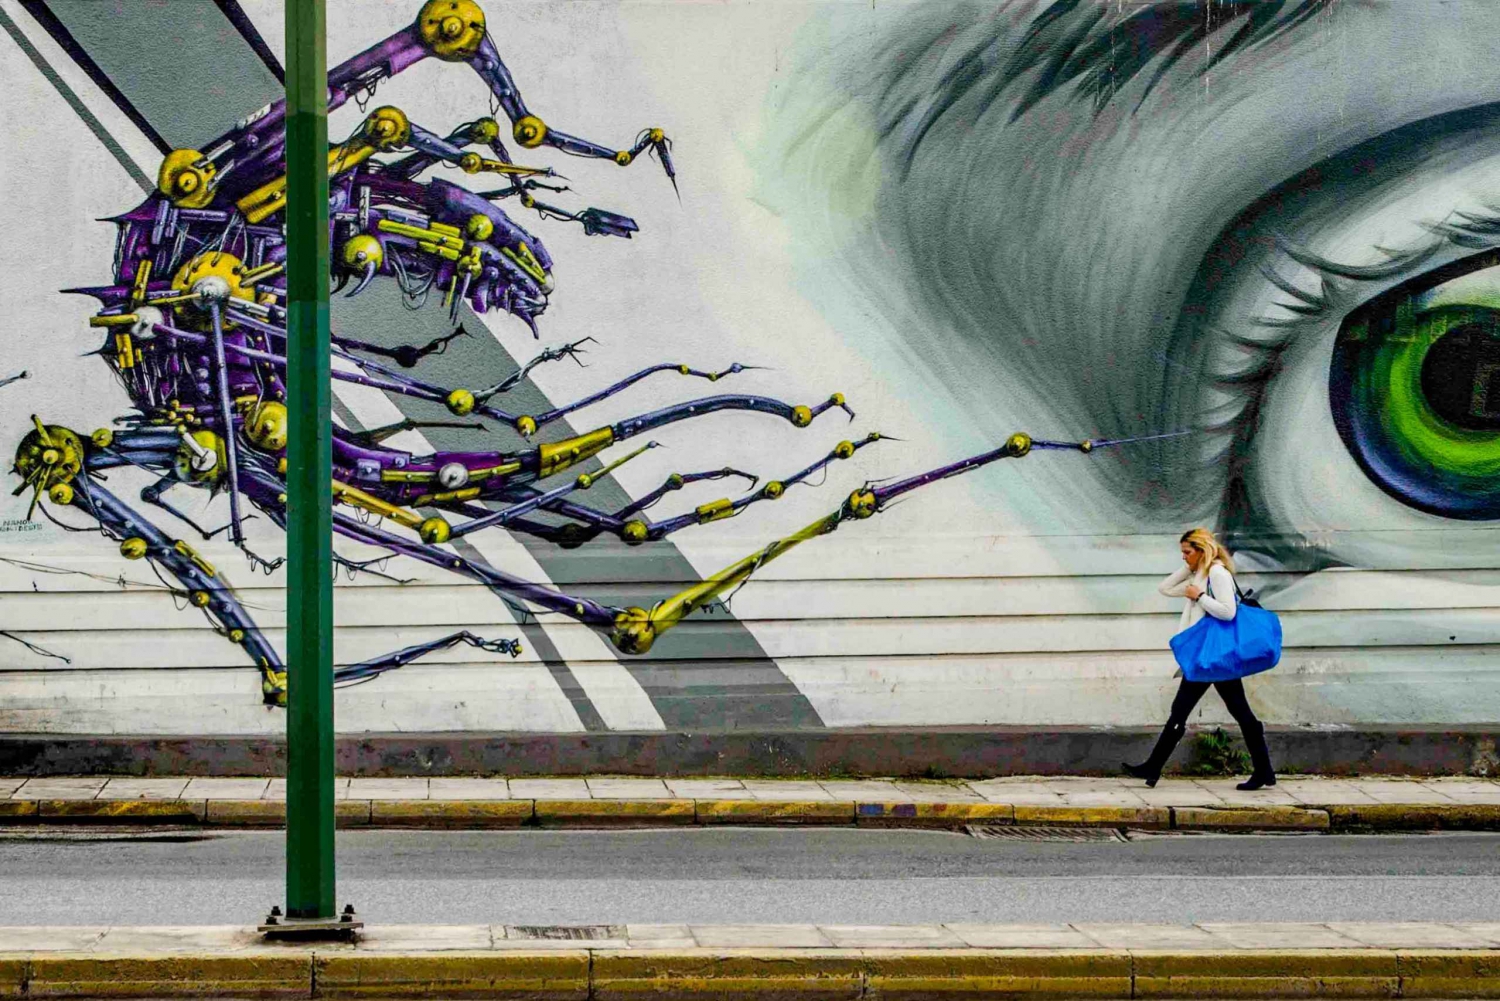 Athen: Oplev gadekunstscenen med en kunstnerguide